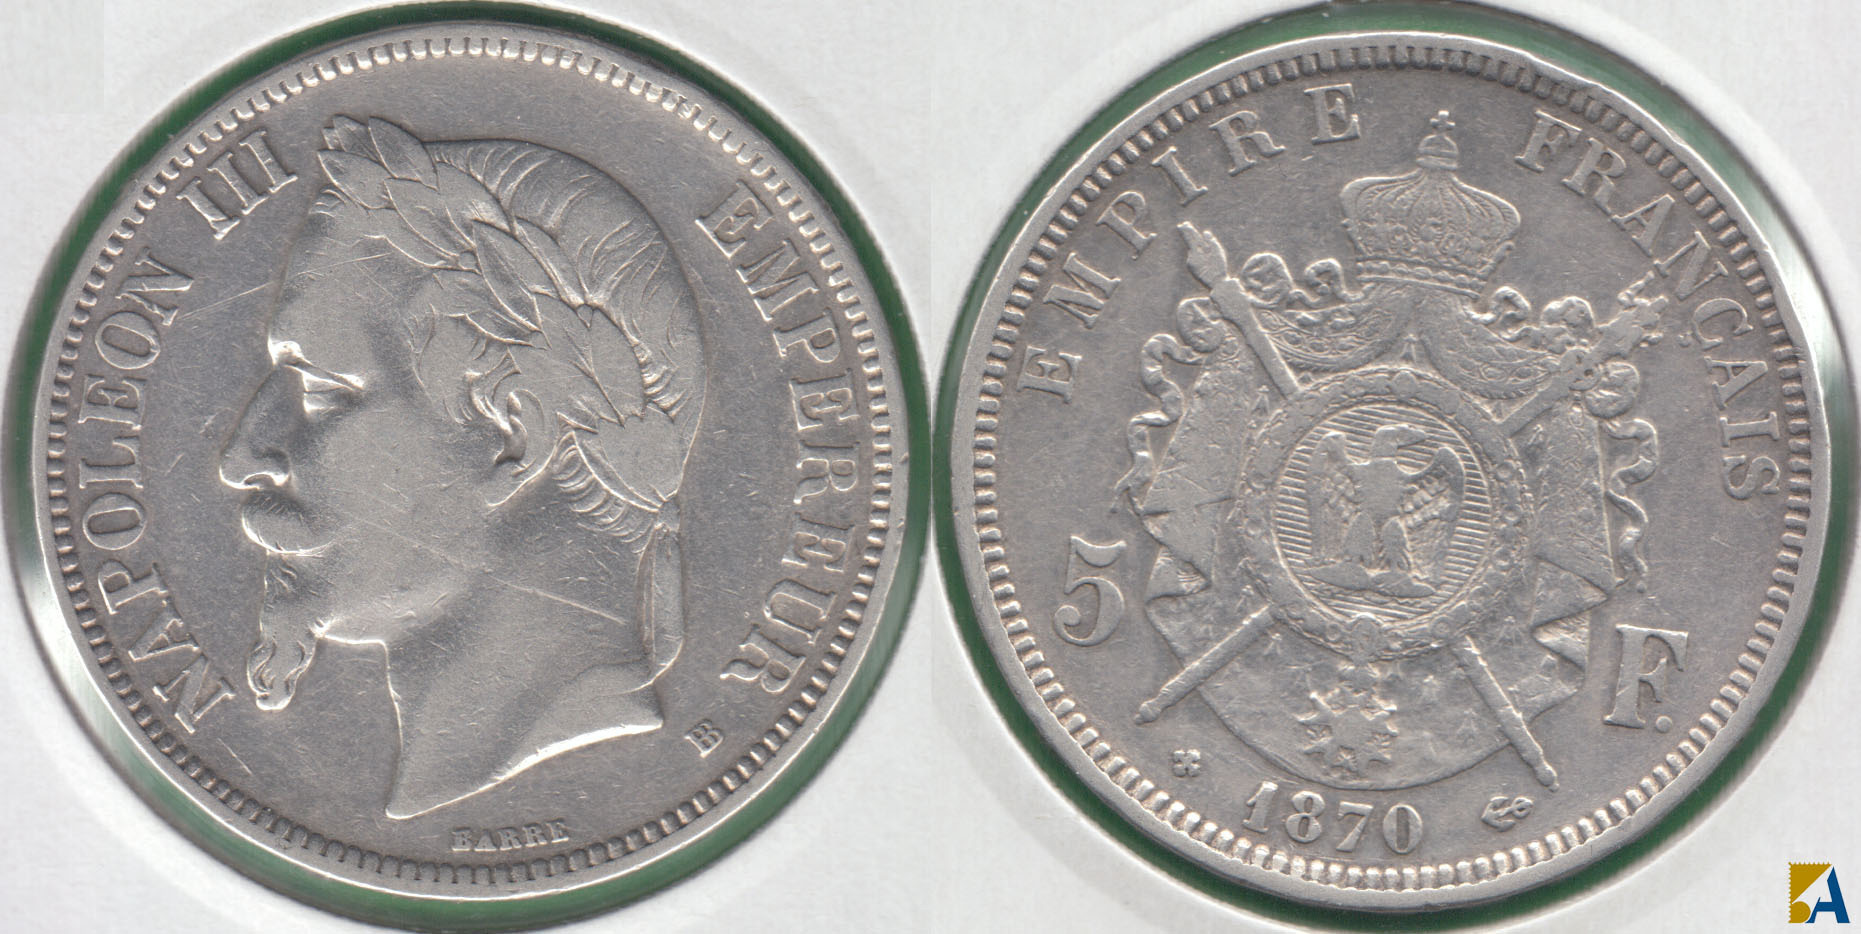 FRANCIA - FRANCE. 5 FRANCOS (FRANCS) DE 1870 BB. PLATA 0.900.